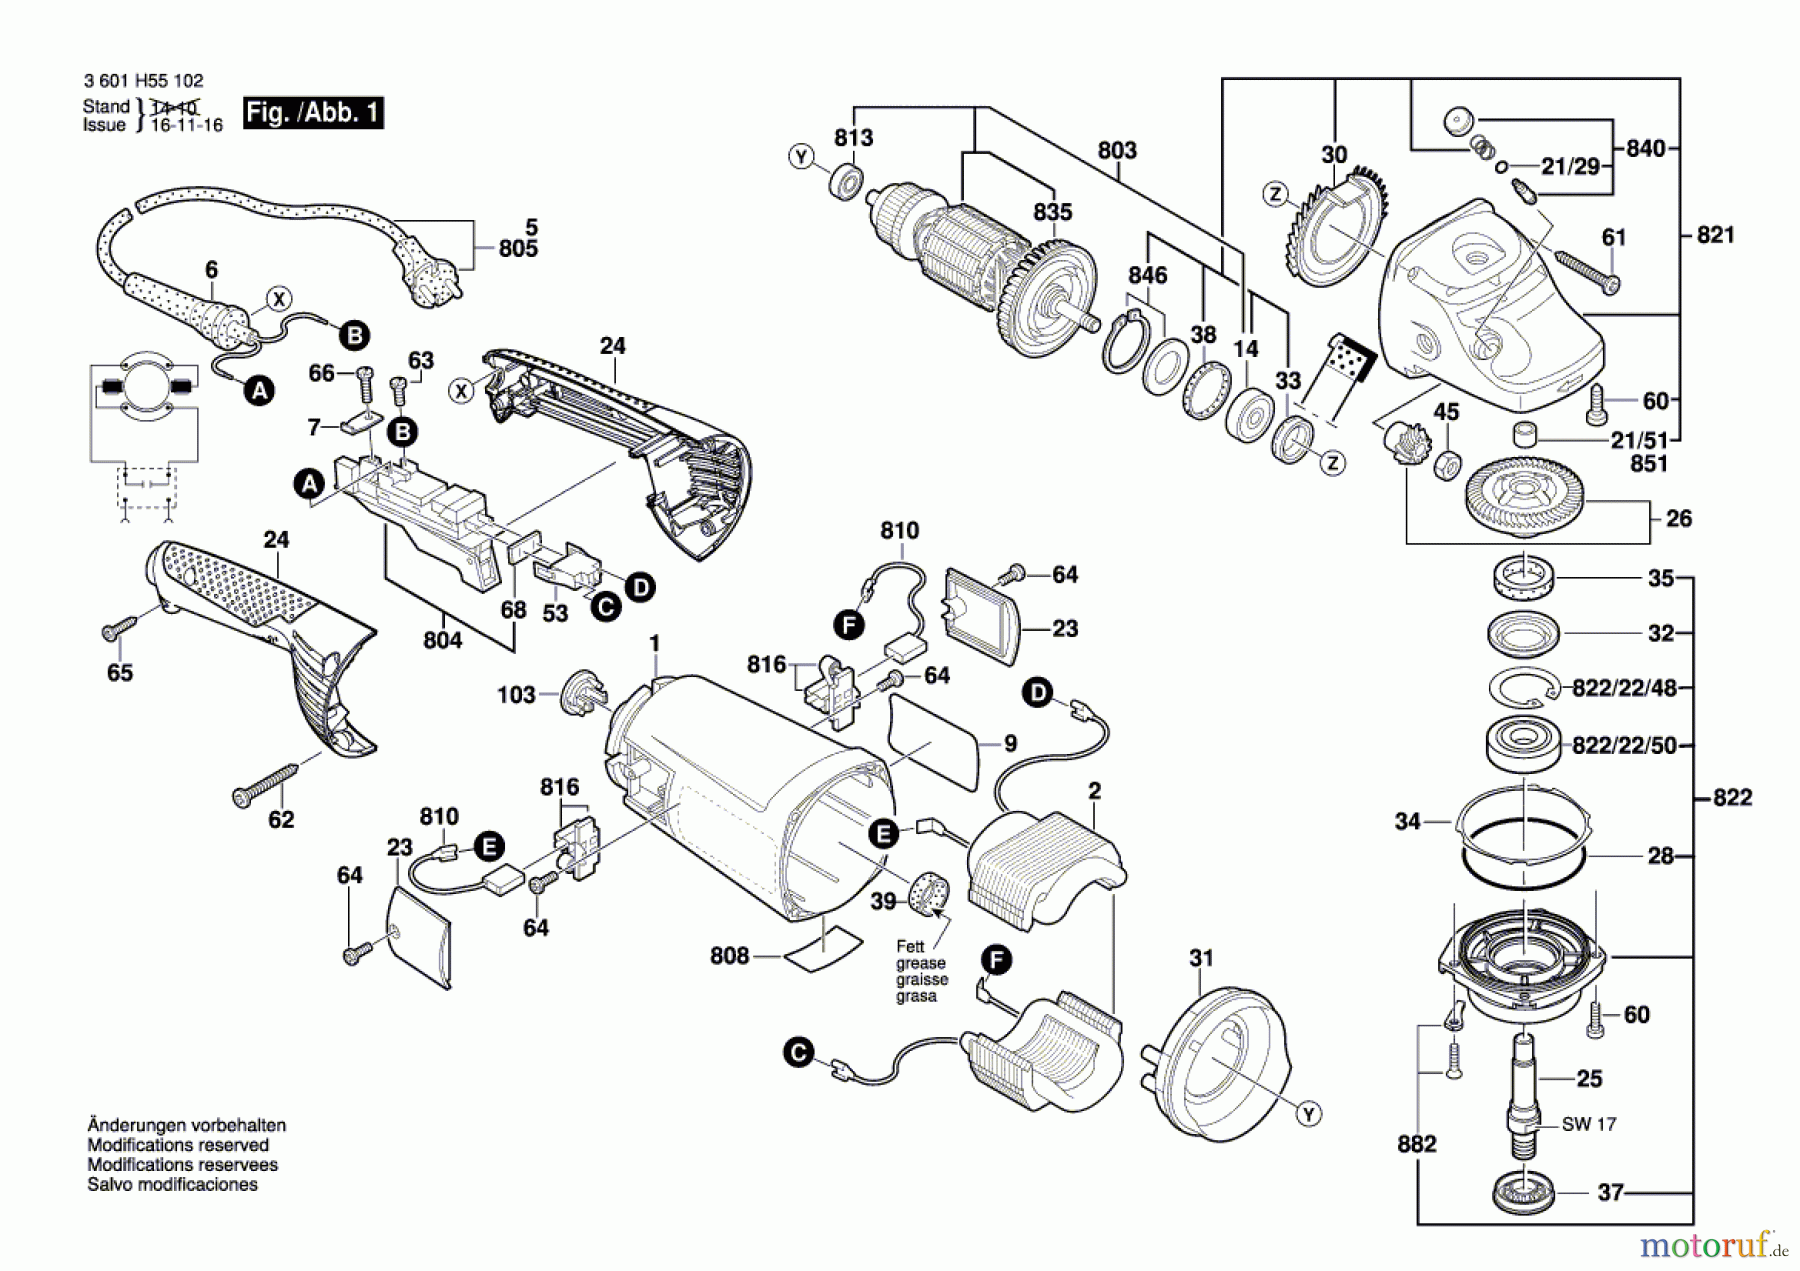  Bosch Werkzeug Winkelschleifer GWS 26-180 JH Seite 1